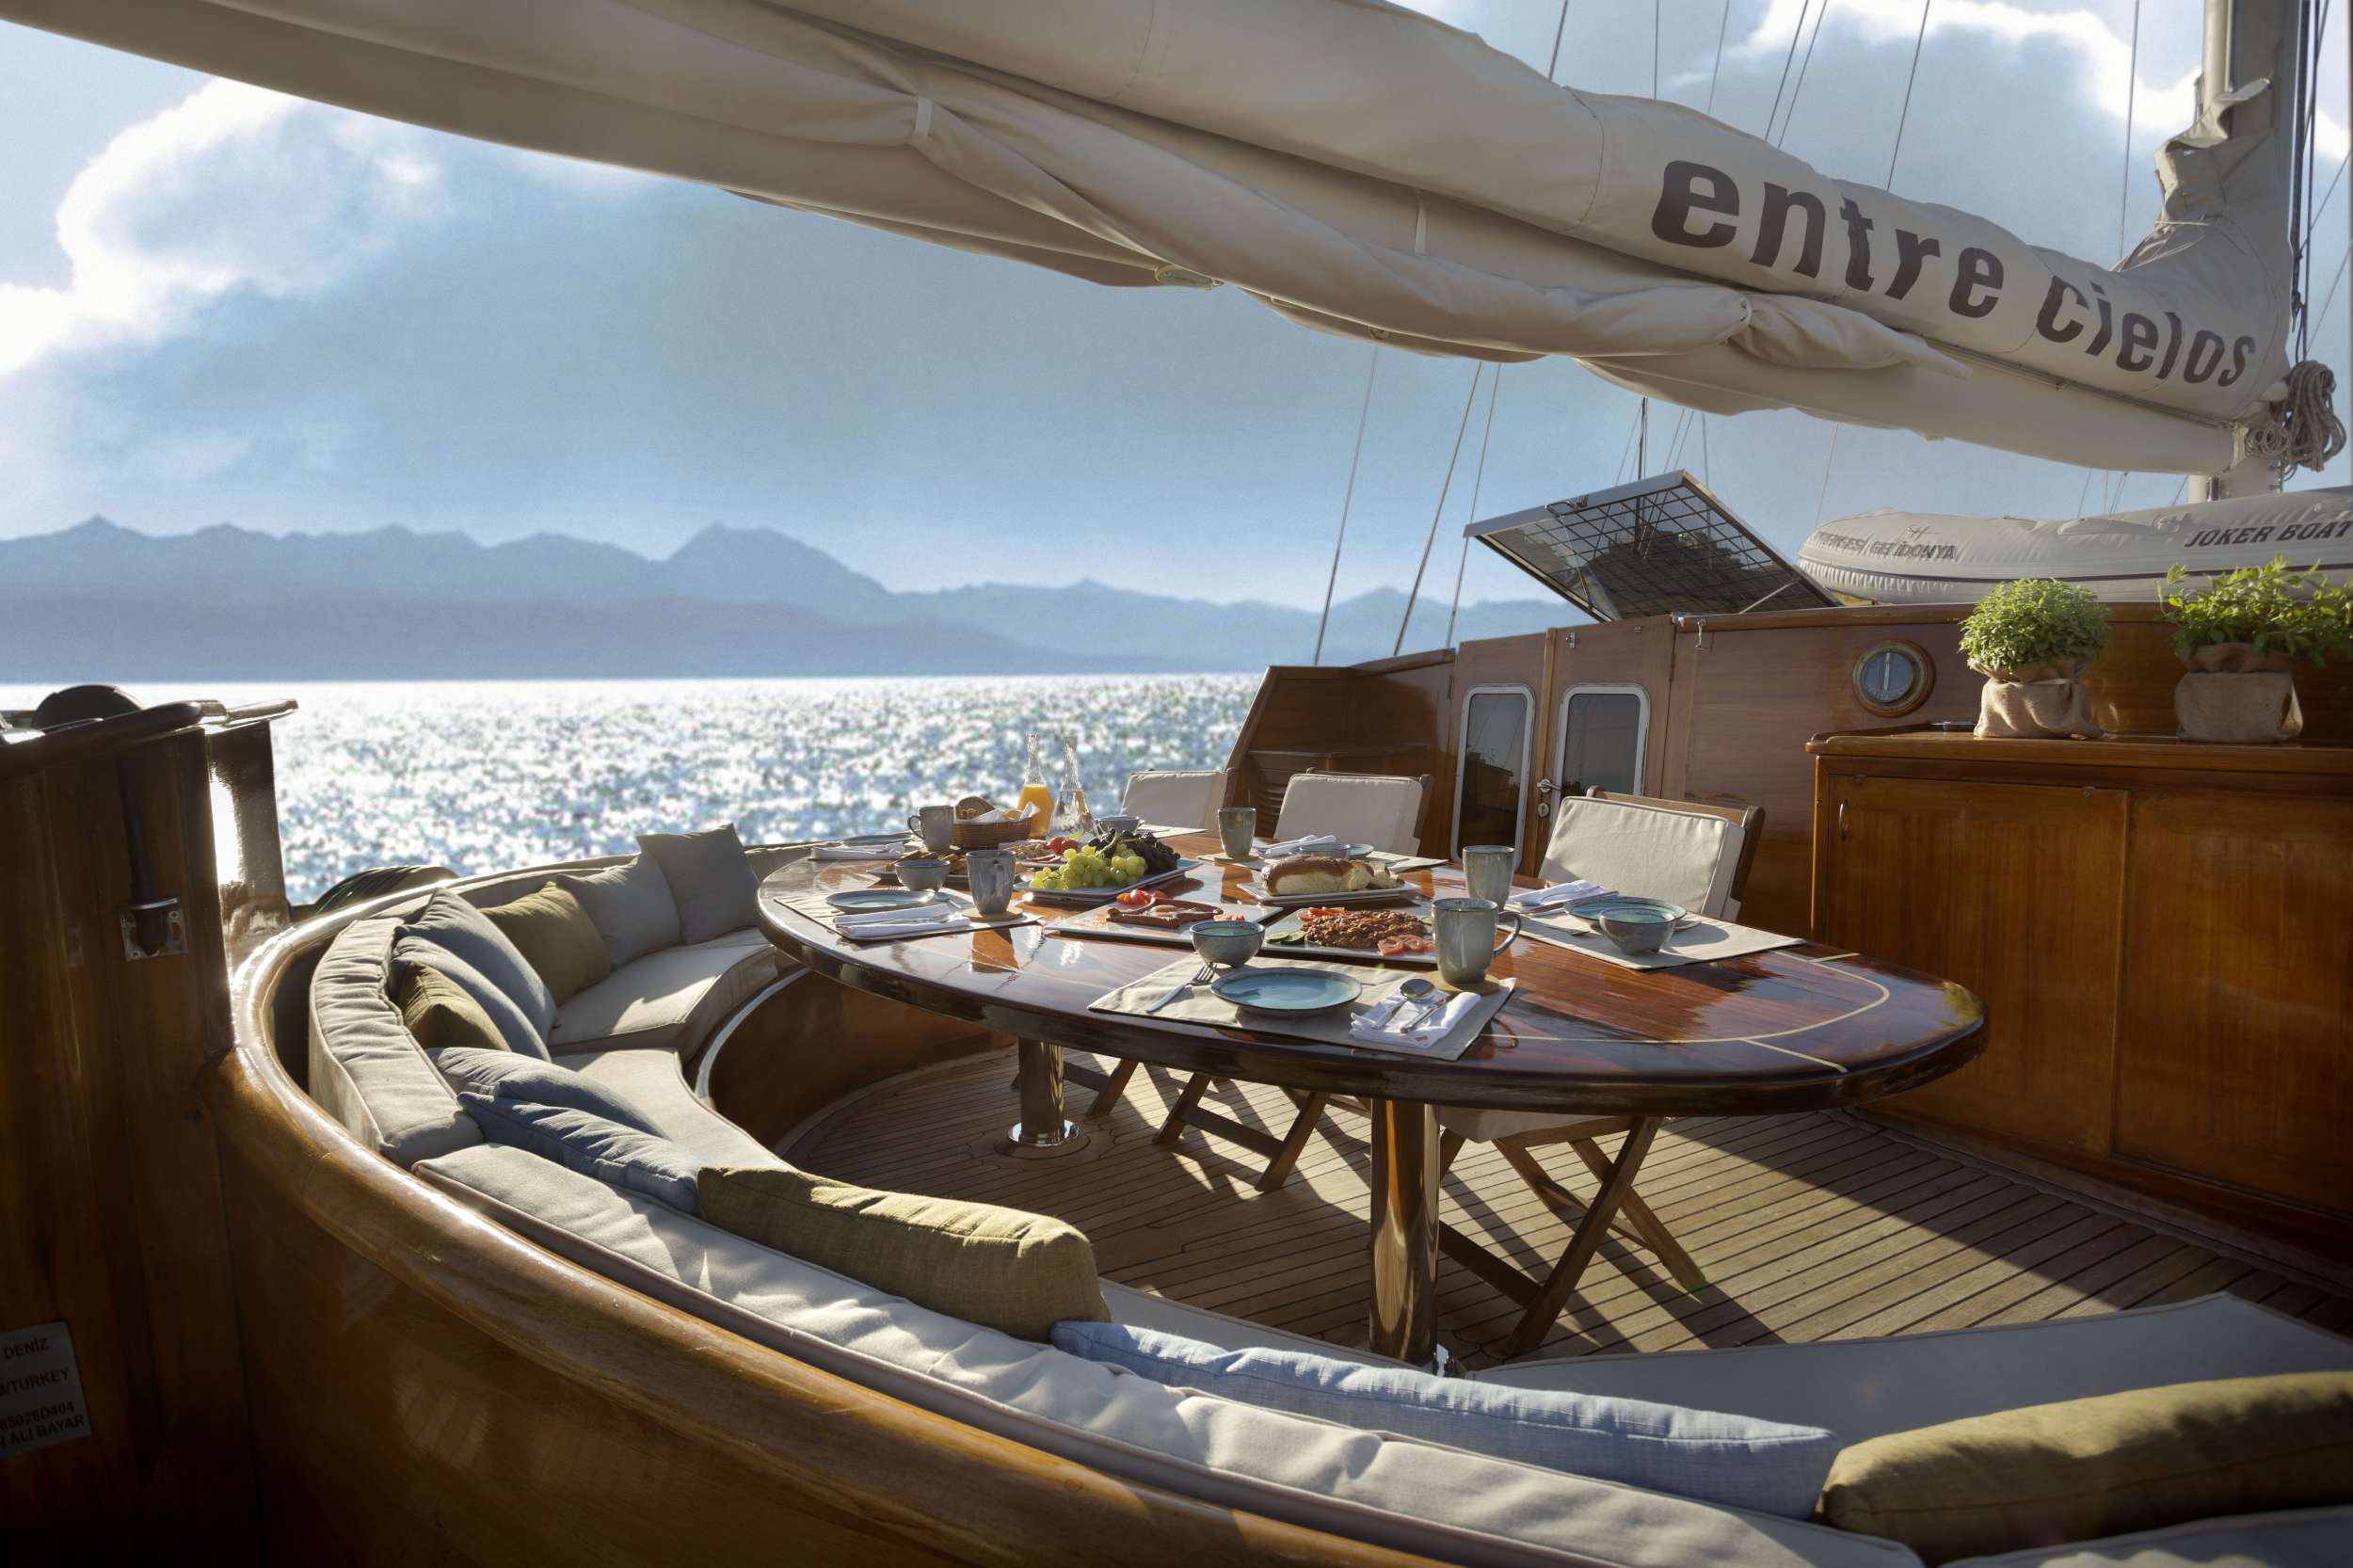 ENTRE CIELOS - Yacht Charter Porto Cheli & Boat hire in Greece 3